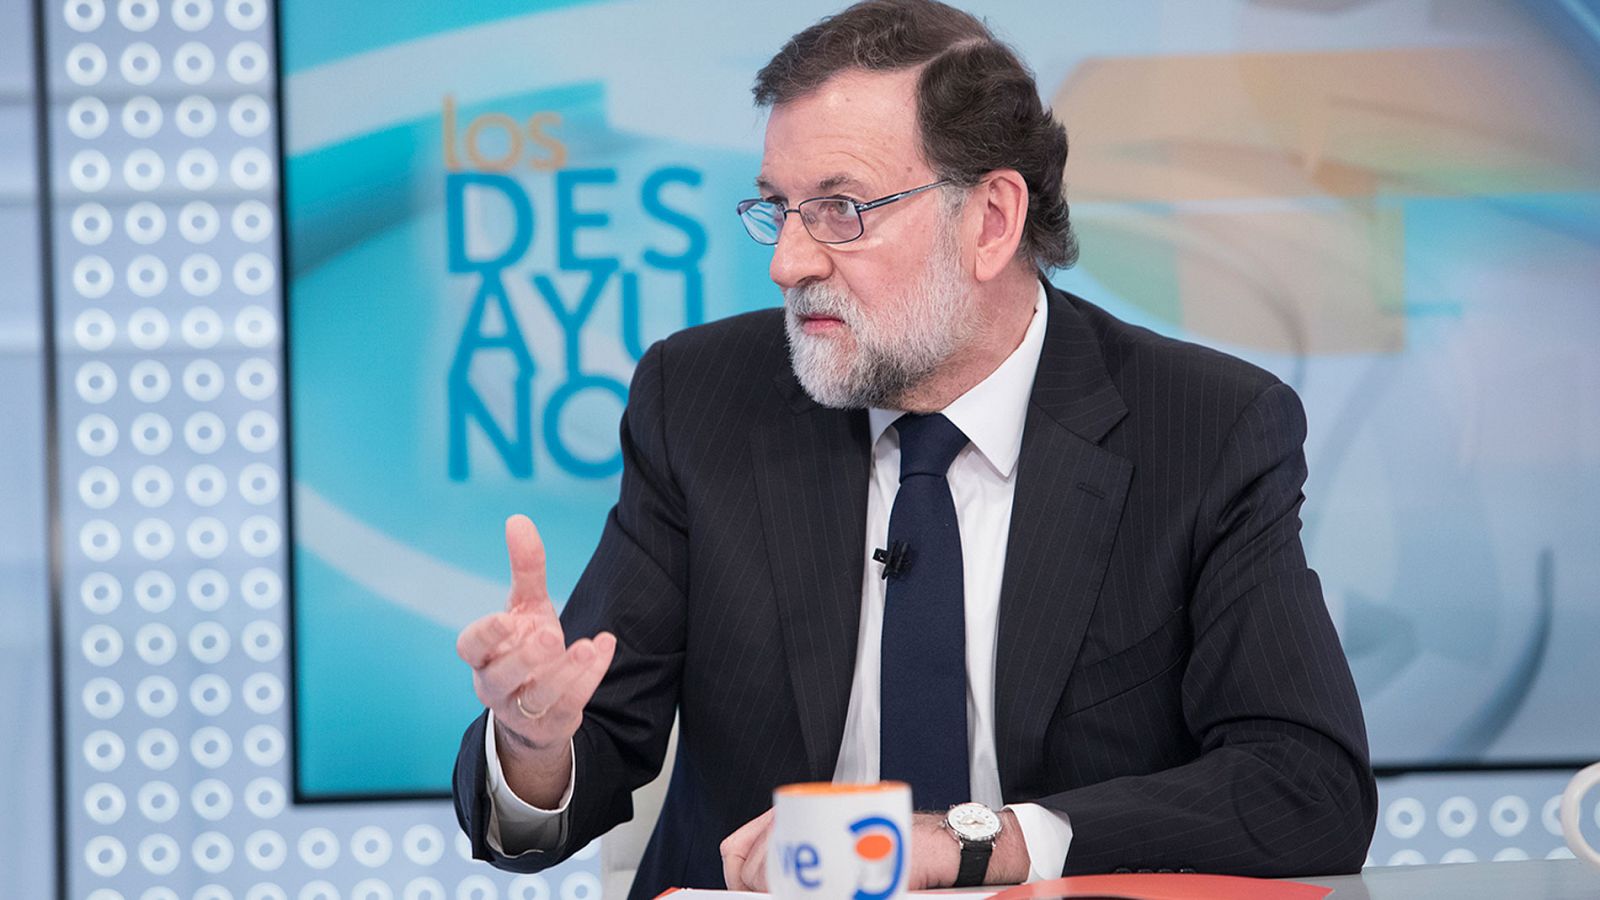 Rajoy, sobre la brecha salarial: "Me retracto: daremos todas las batallas para que esas situaciones sean menores"